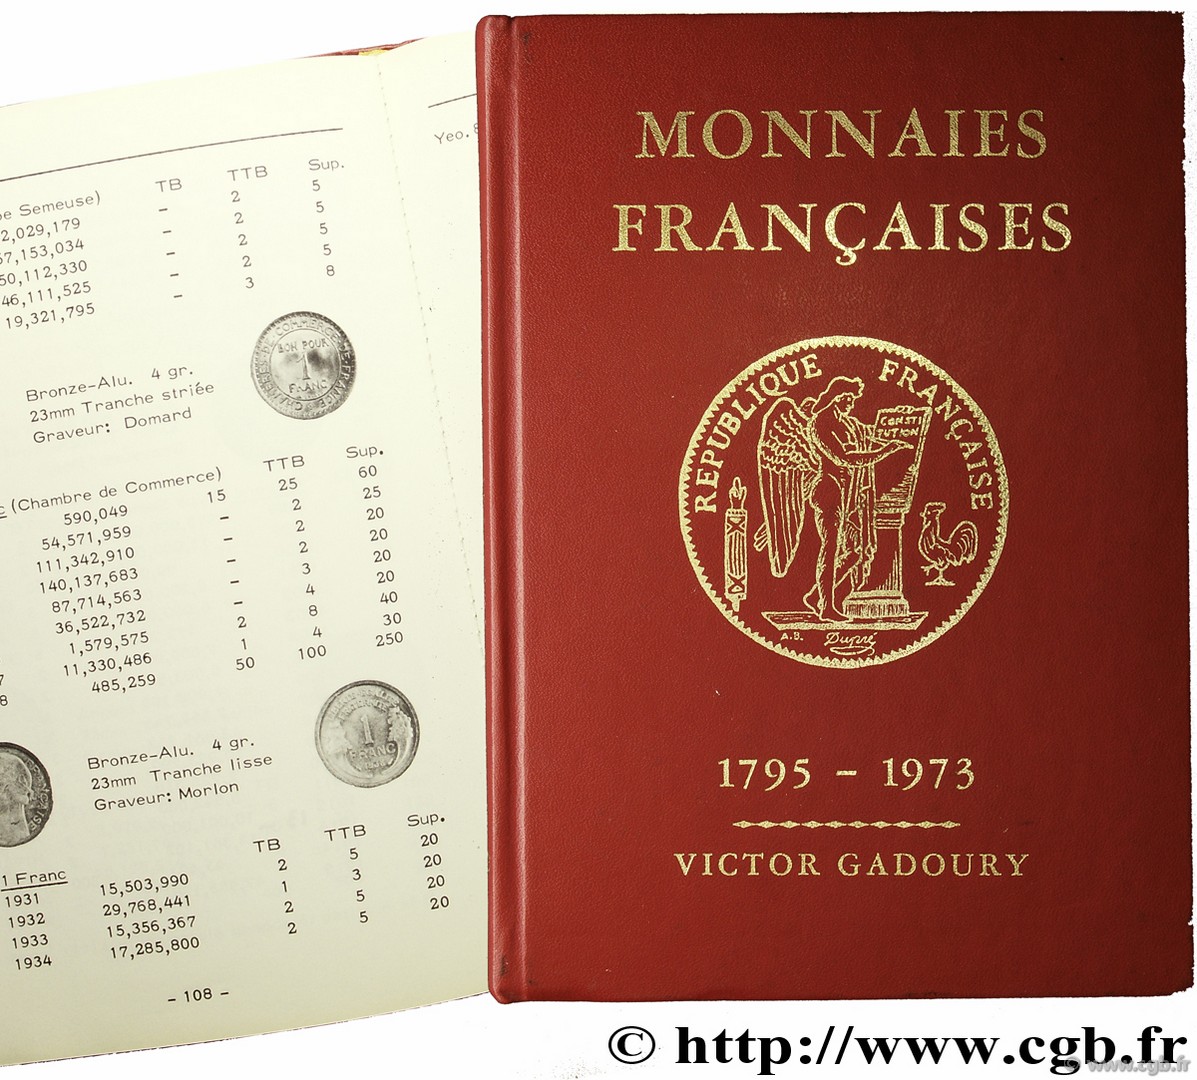 Monnaies françaises 1973 GADOURY V.